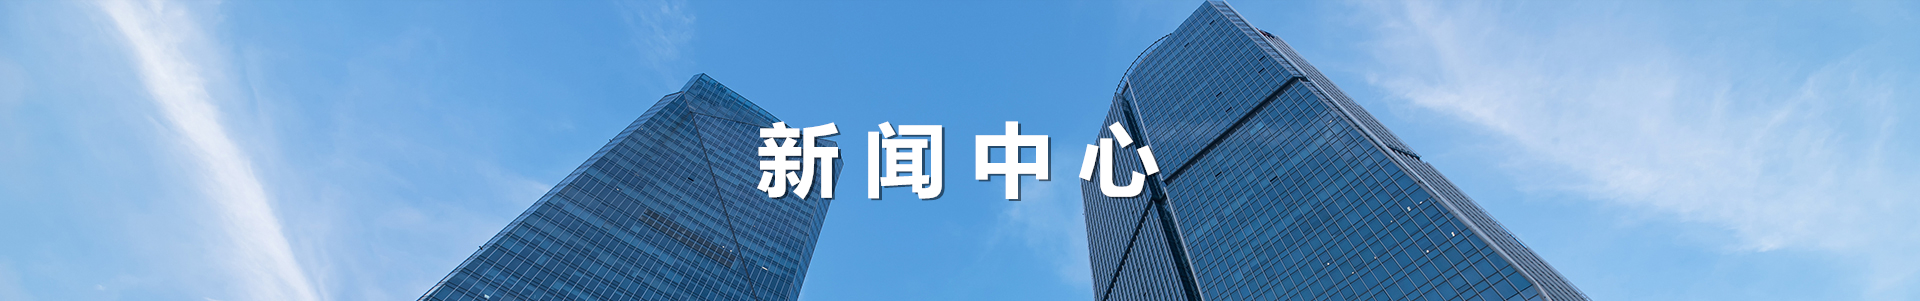 新聞banner